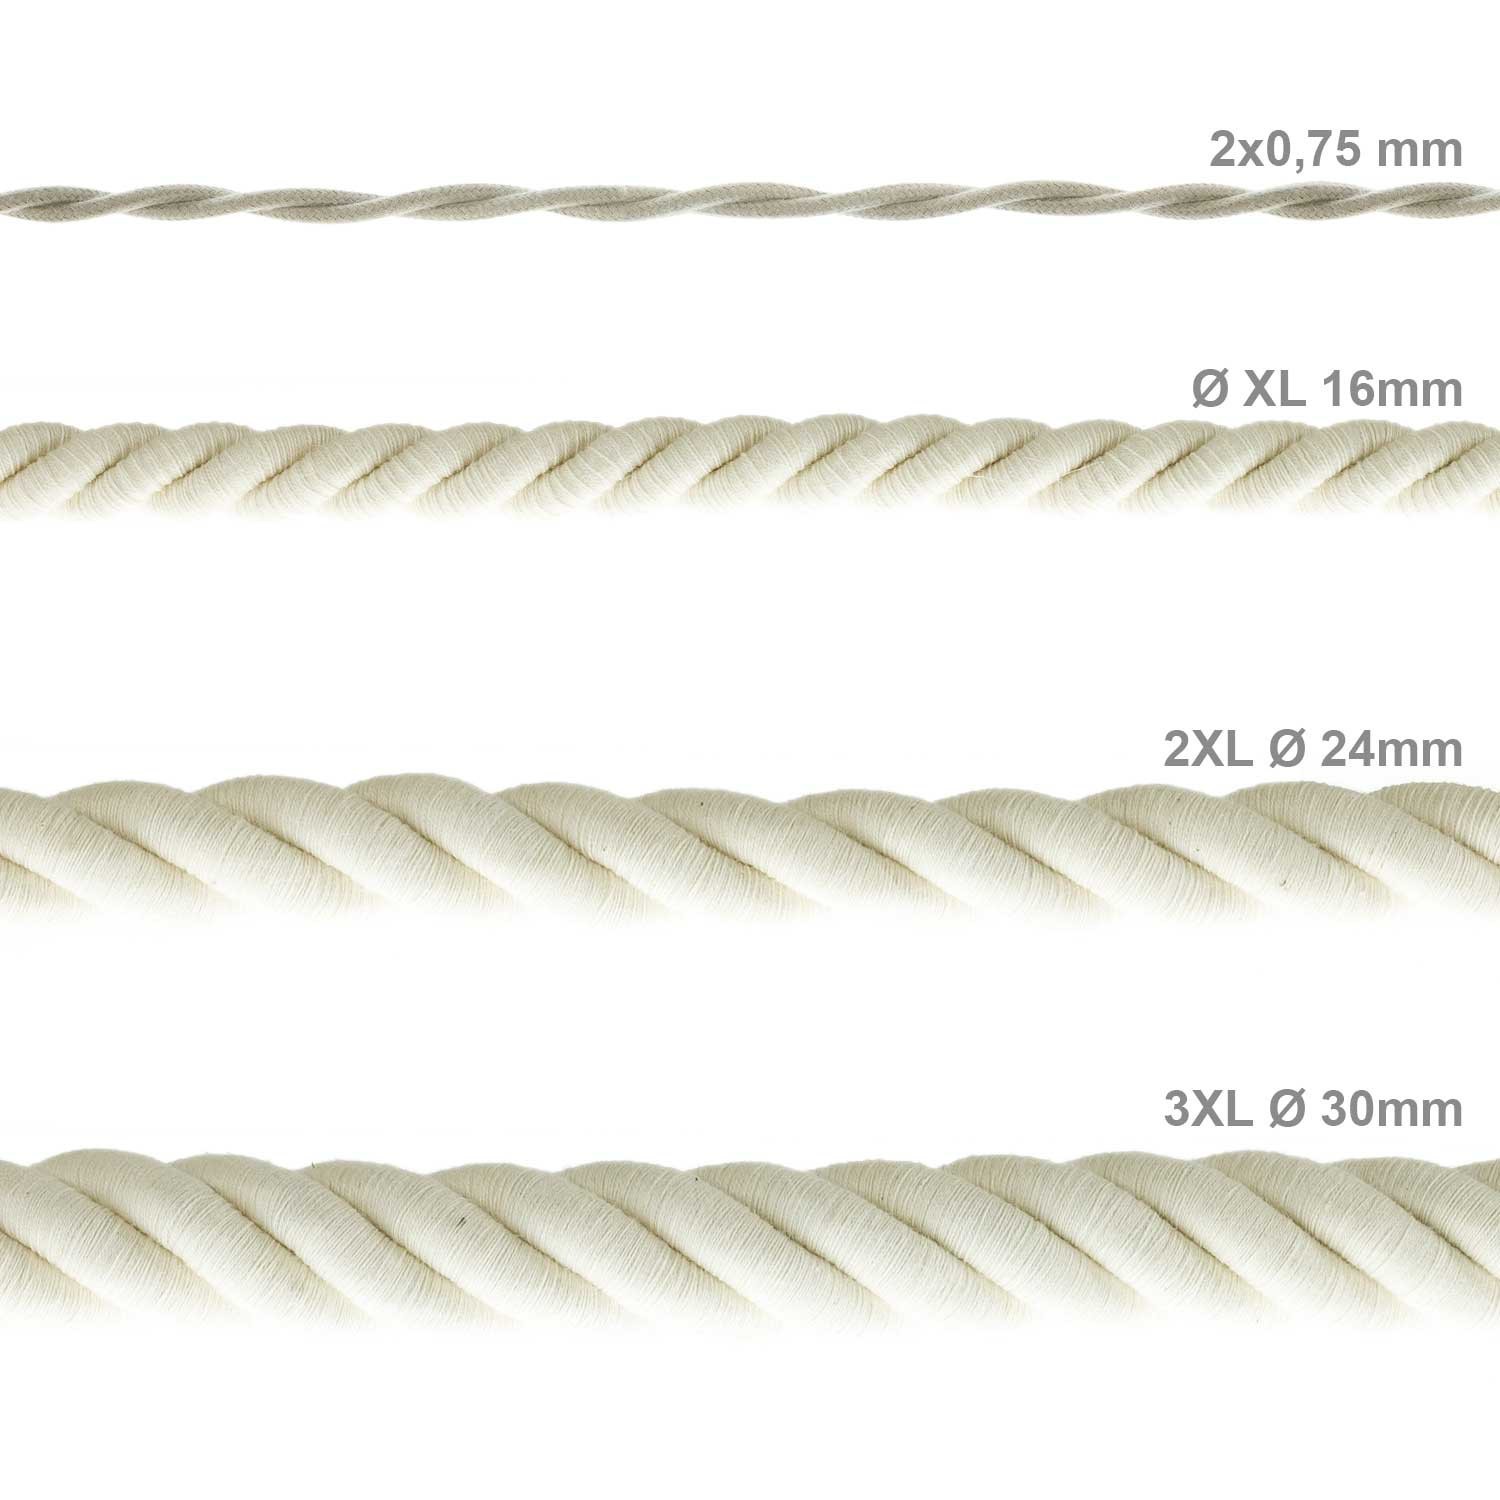 Cordón 2XL, cable eléctrico 3x0,75, recubierto en algodón en bruto. Diámetro: 24mm.